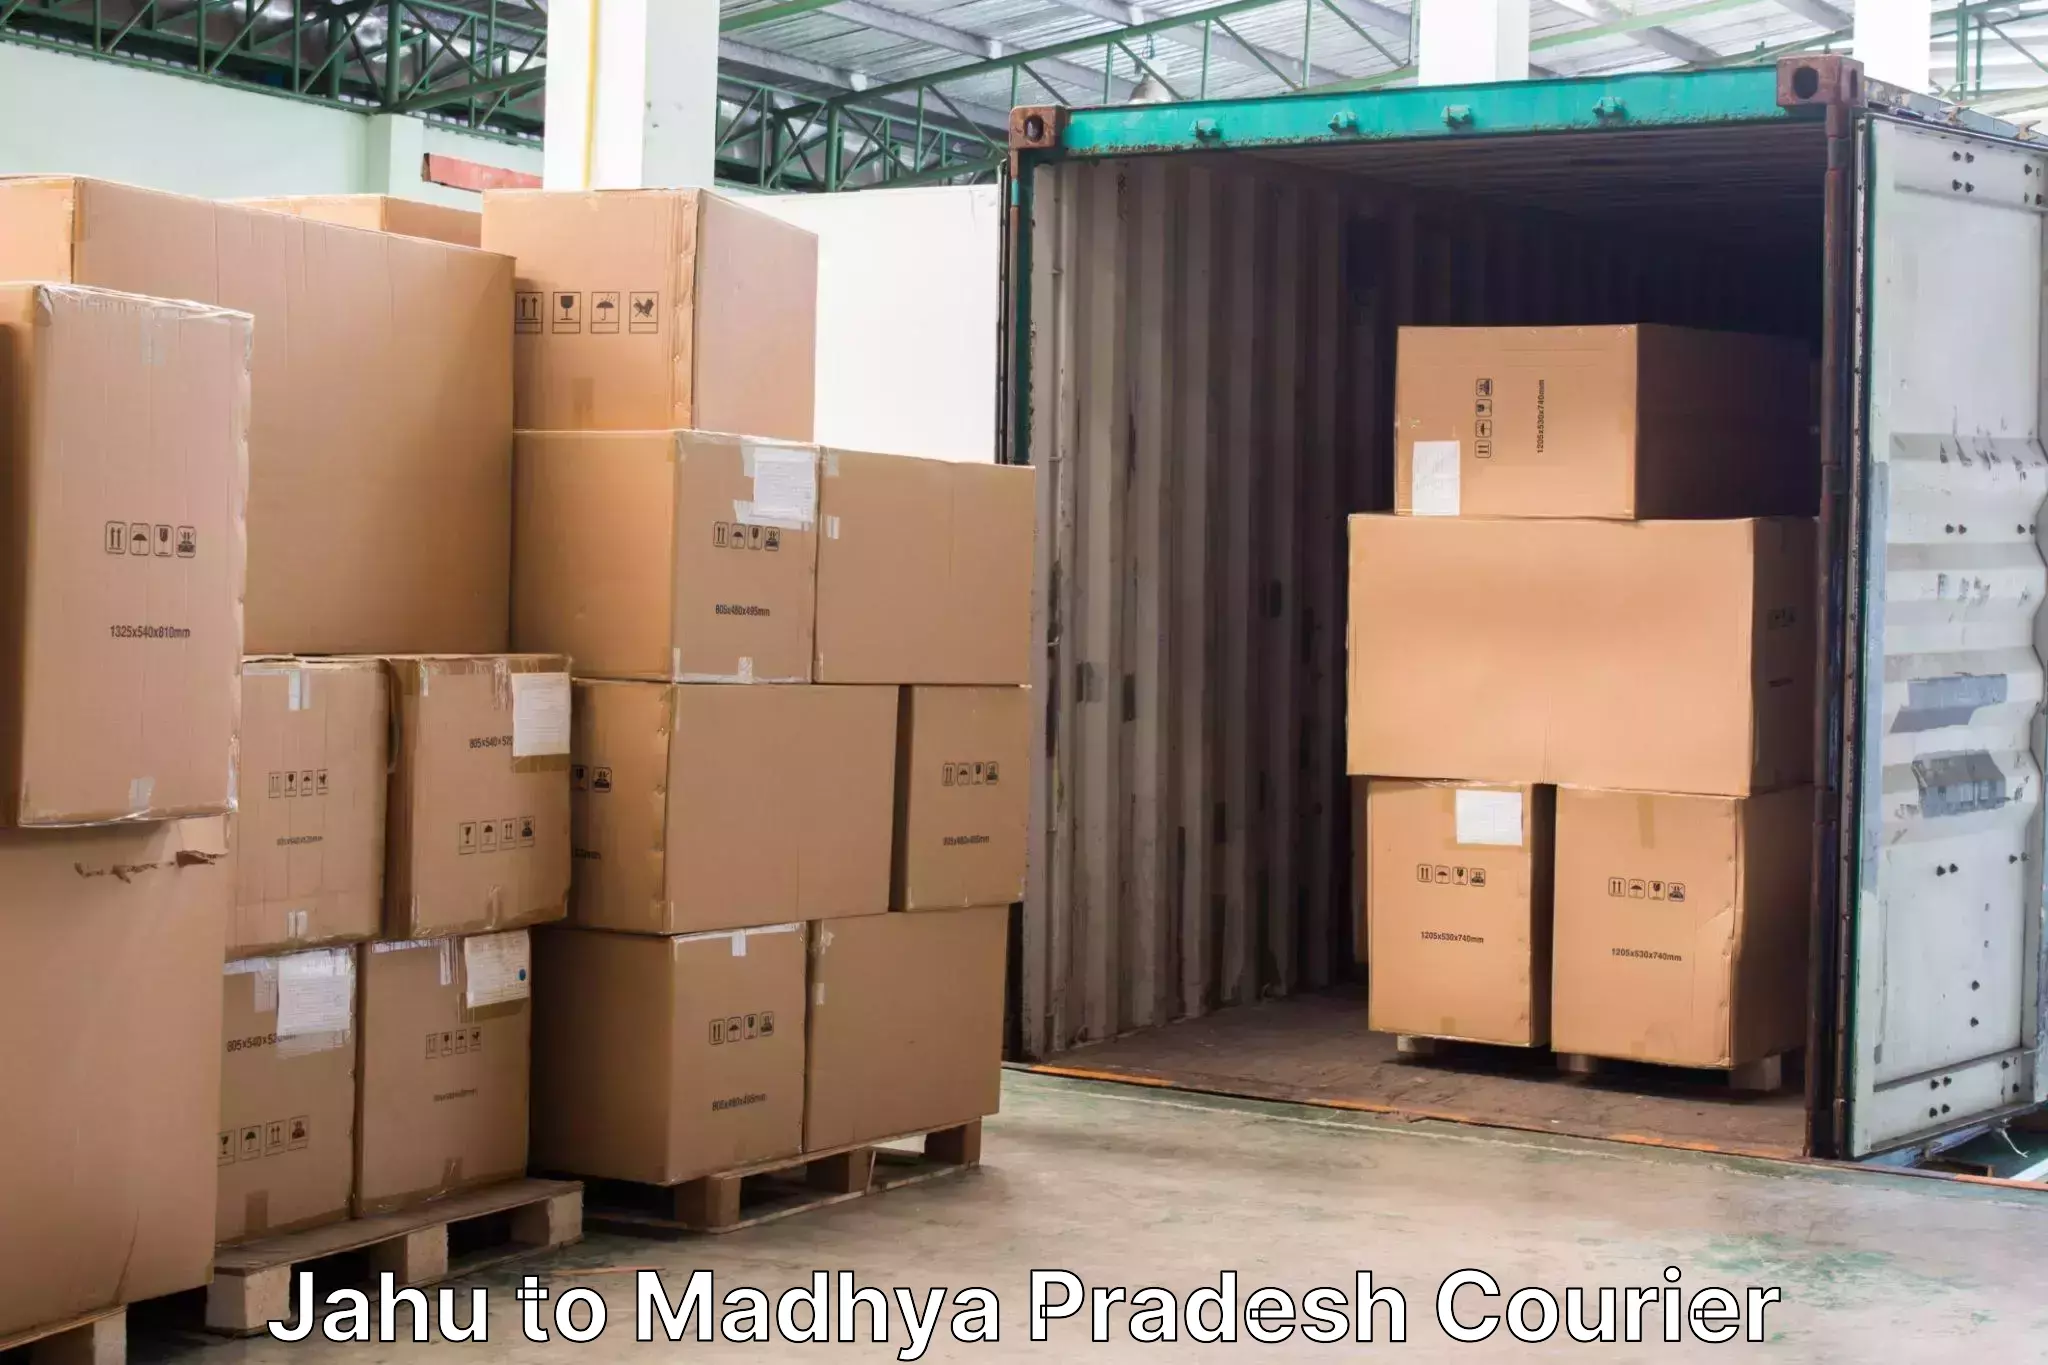 Emergency baggage service Jahu to Kesali